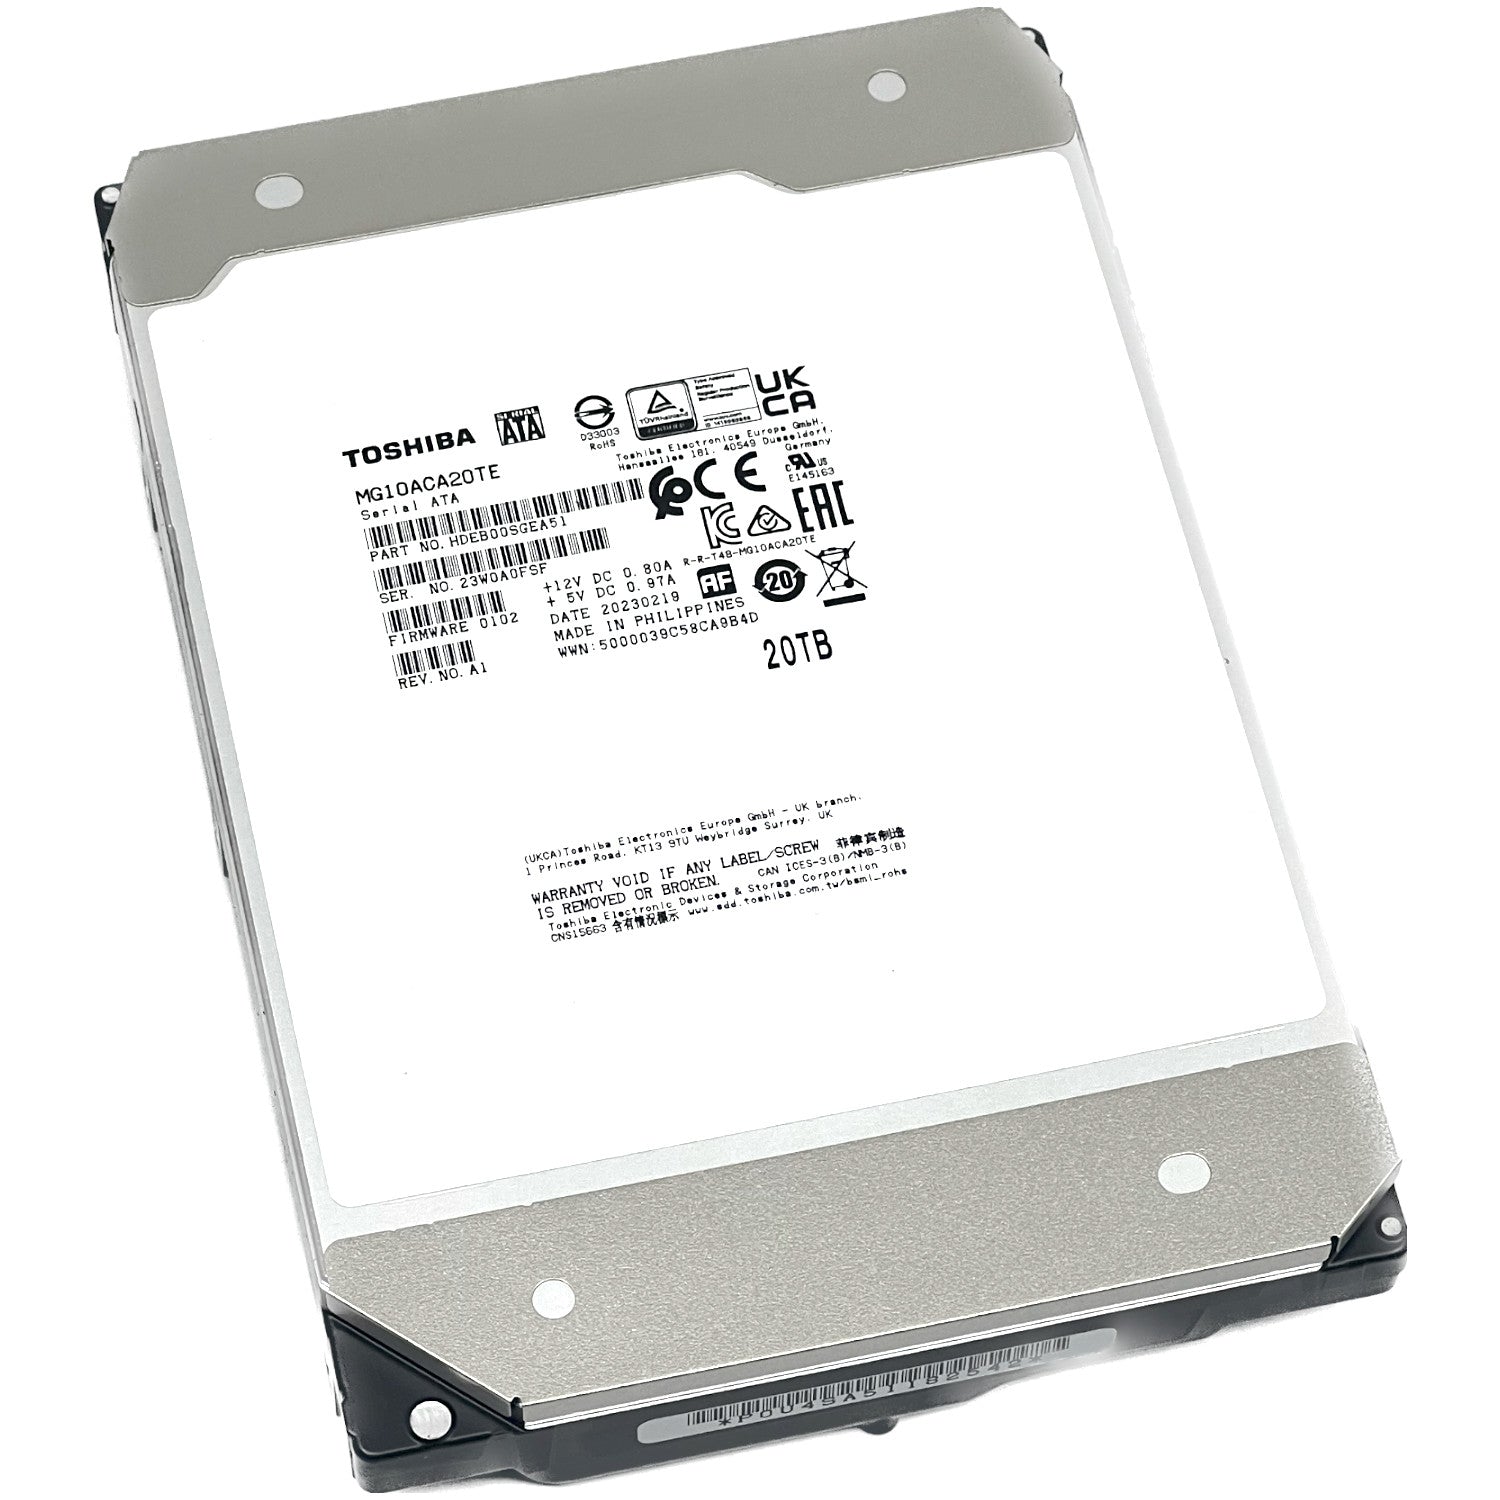 Forvent det eksperimentel bue Toshiba MG10 MG10ACA20TE 20TB SATA 3.5" HDD — ServerPartDeals.com